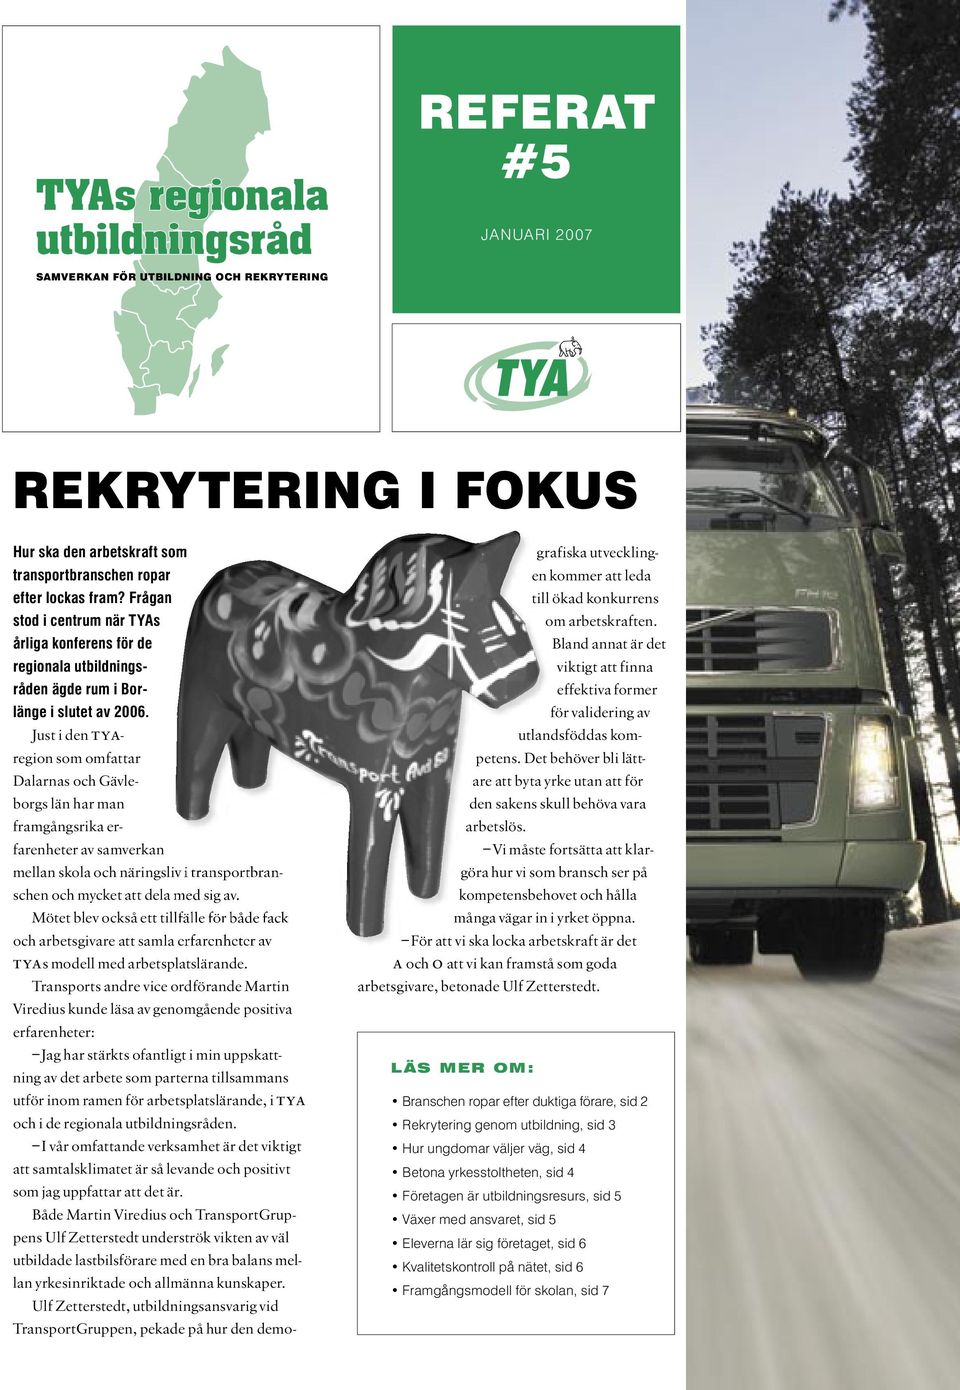 Just i den tyaregion som omfattar Dalarnas och Gävleborgs län har man framgångsrika erfarenheter av samverkan mellan skola och näringsliv i transportbranschen och mycket att dela med sig av.